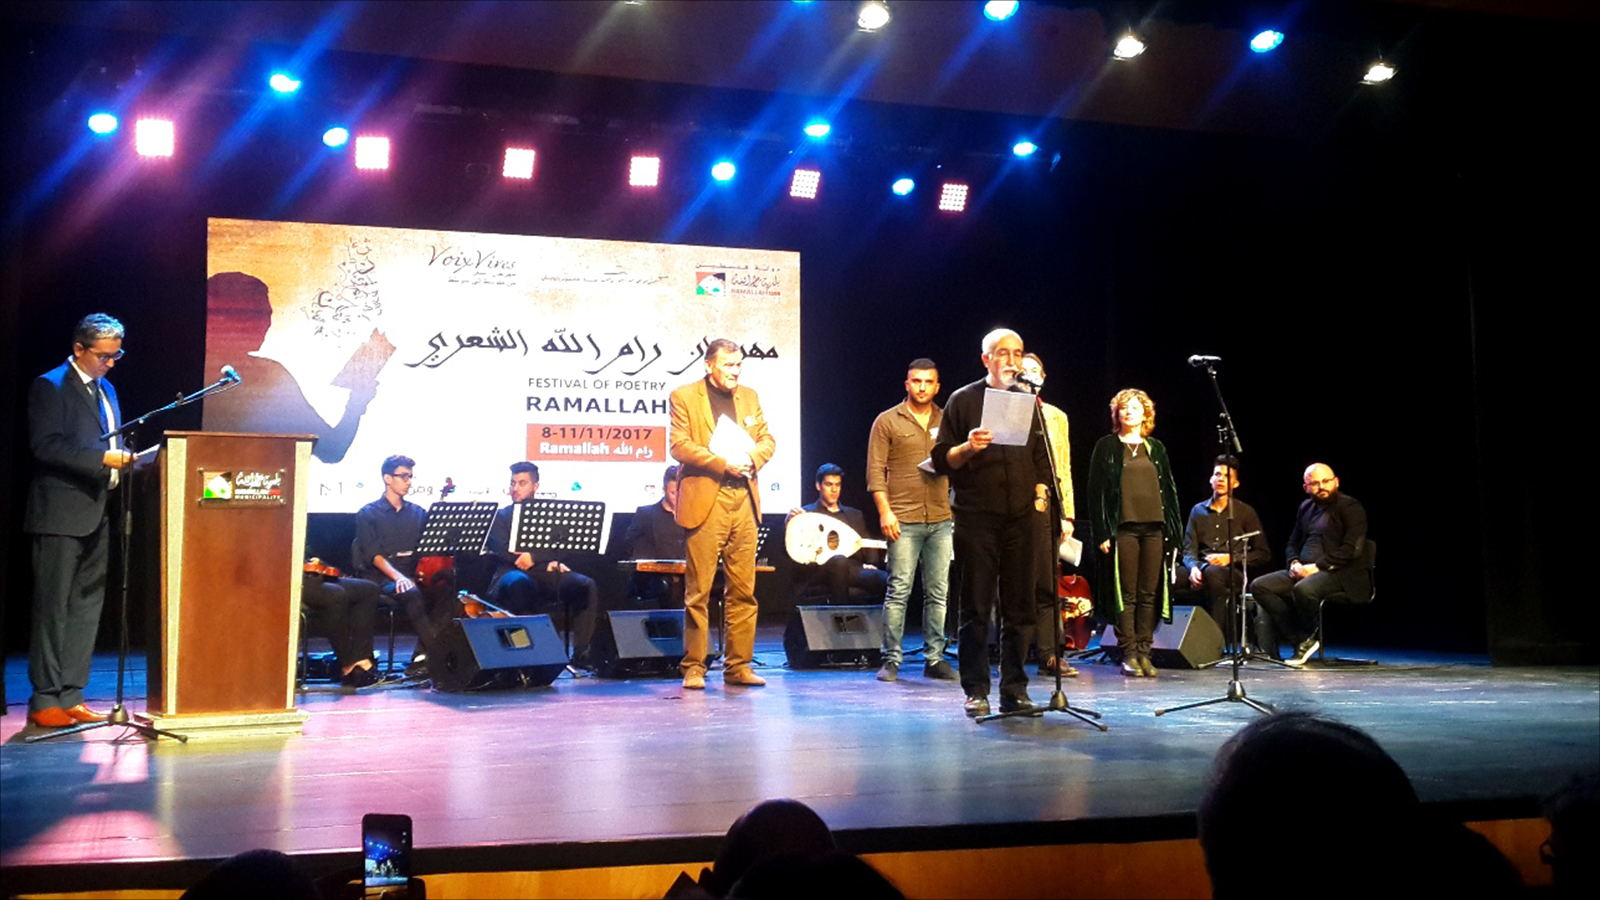 ‪الشاعر الجزائري حميد طيبوشي يقرأ نصا شعريا في افتتاح مهرجان رام الله الشعري‬ (الجزيرة)